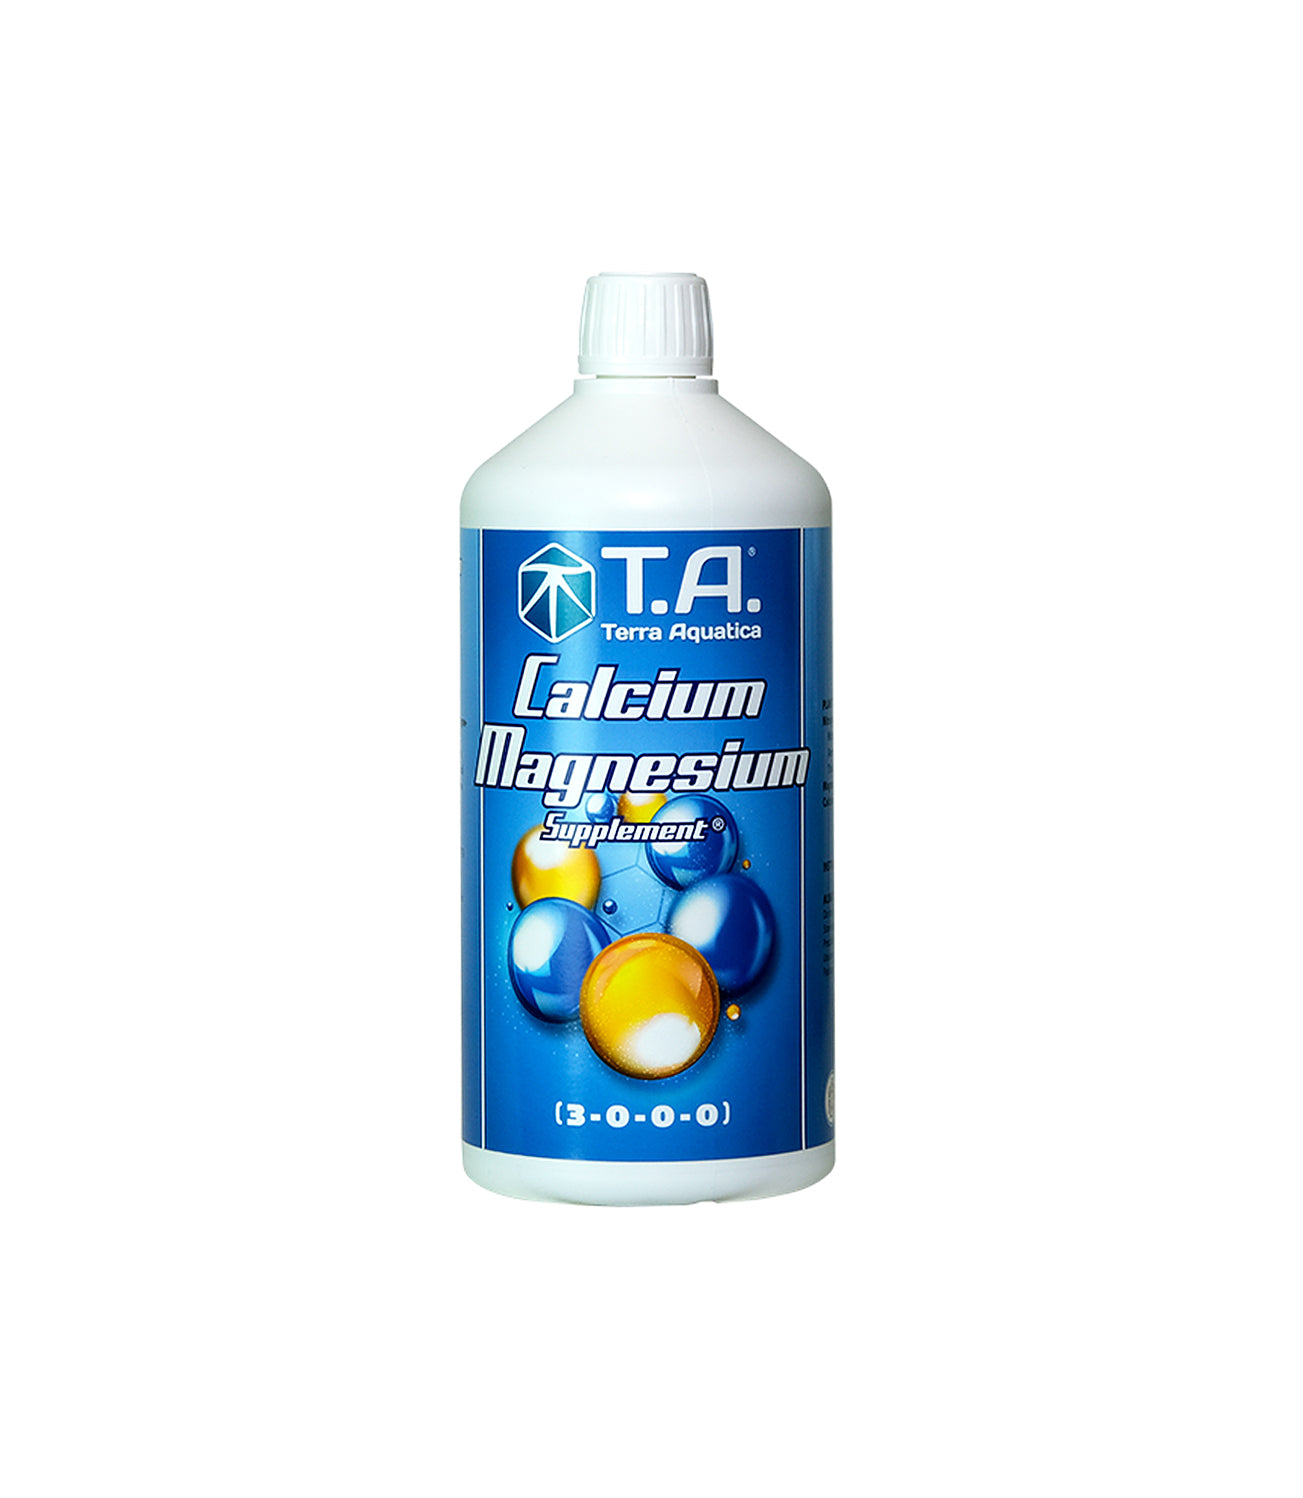 Terra Aquatica Calcium Magnesium Supplement